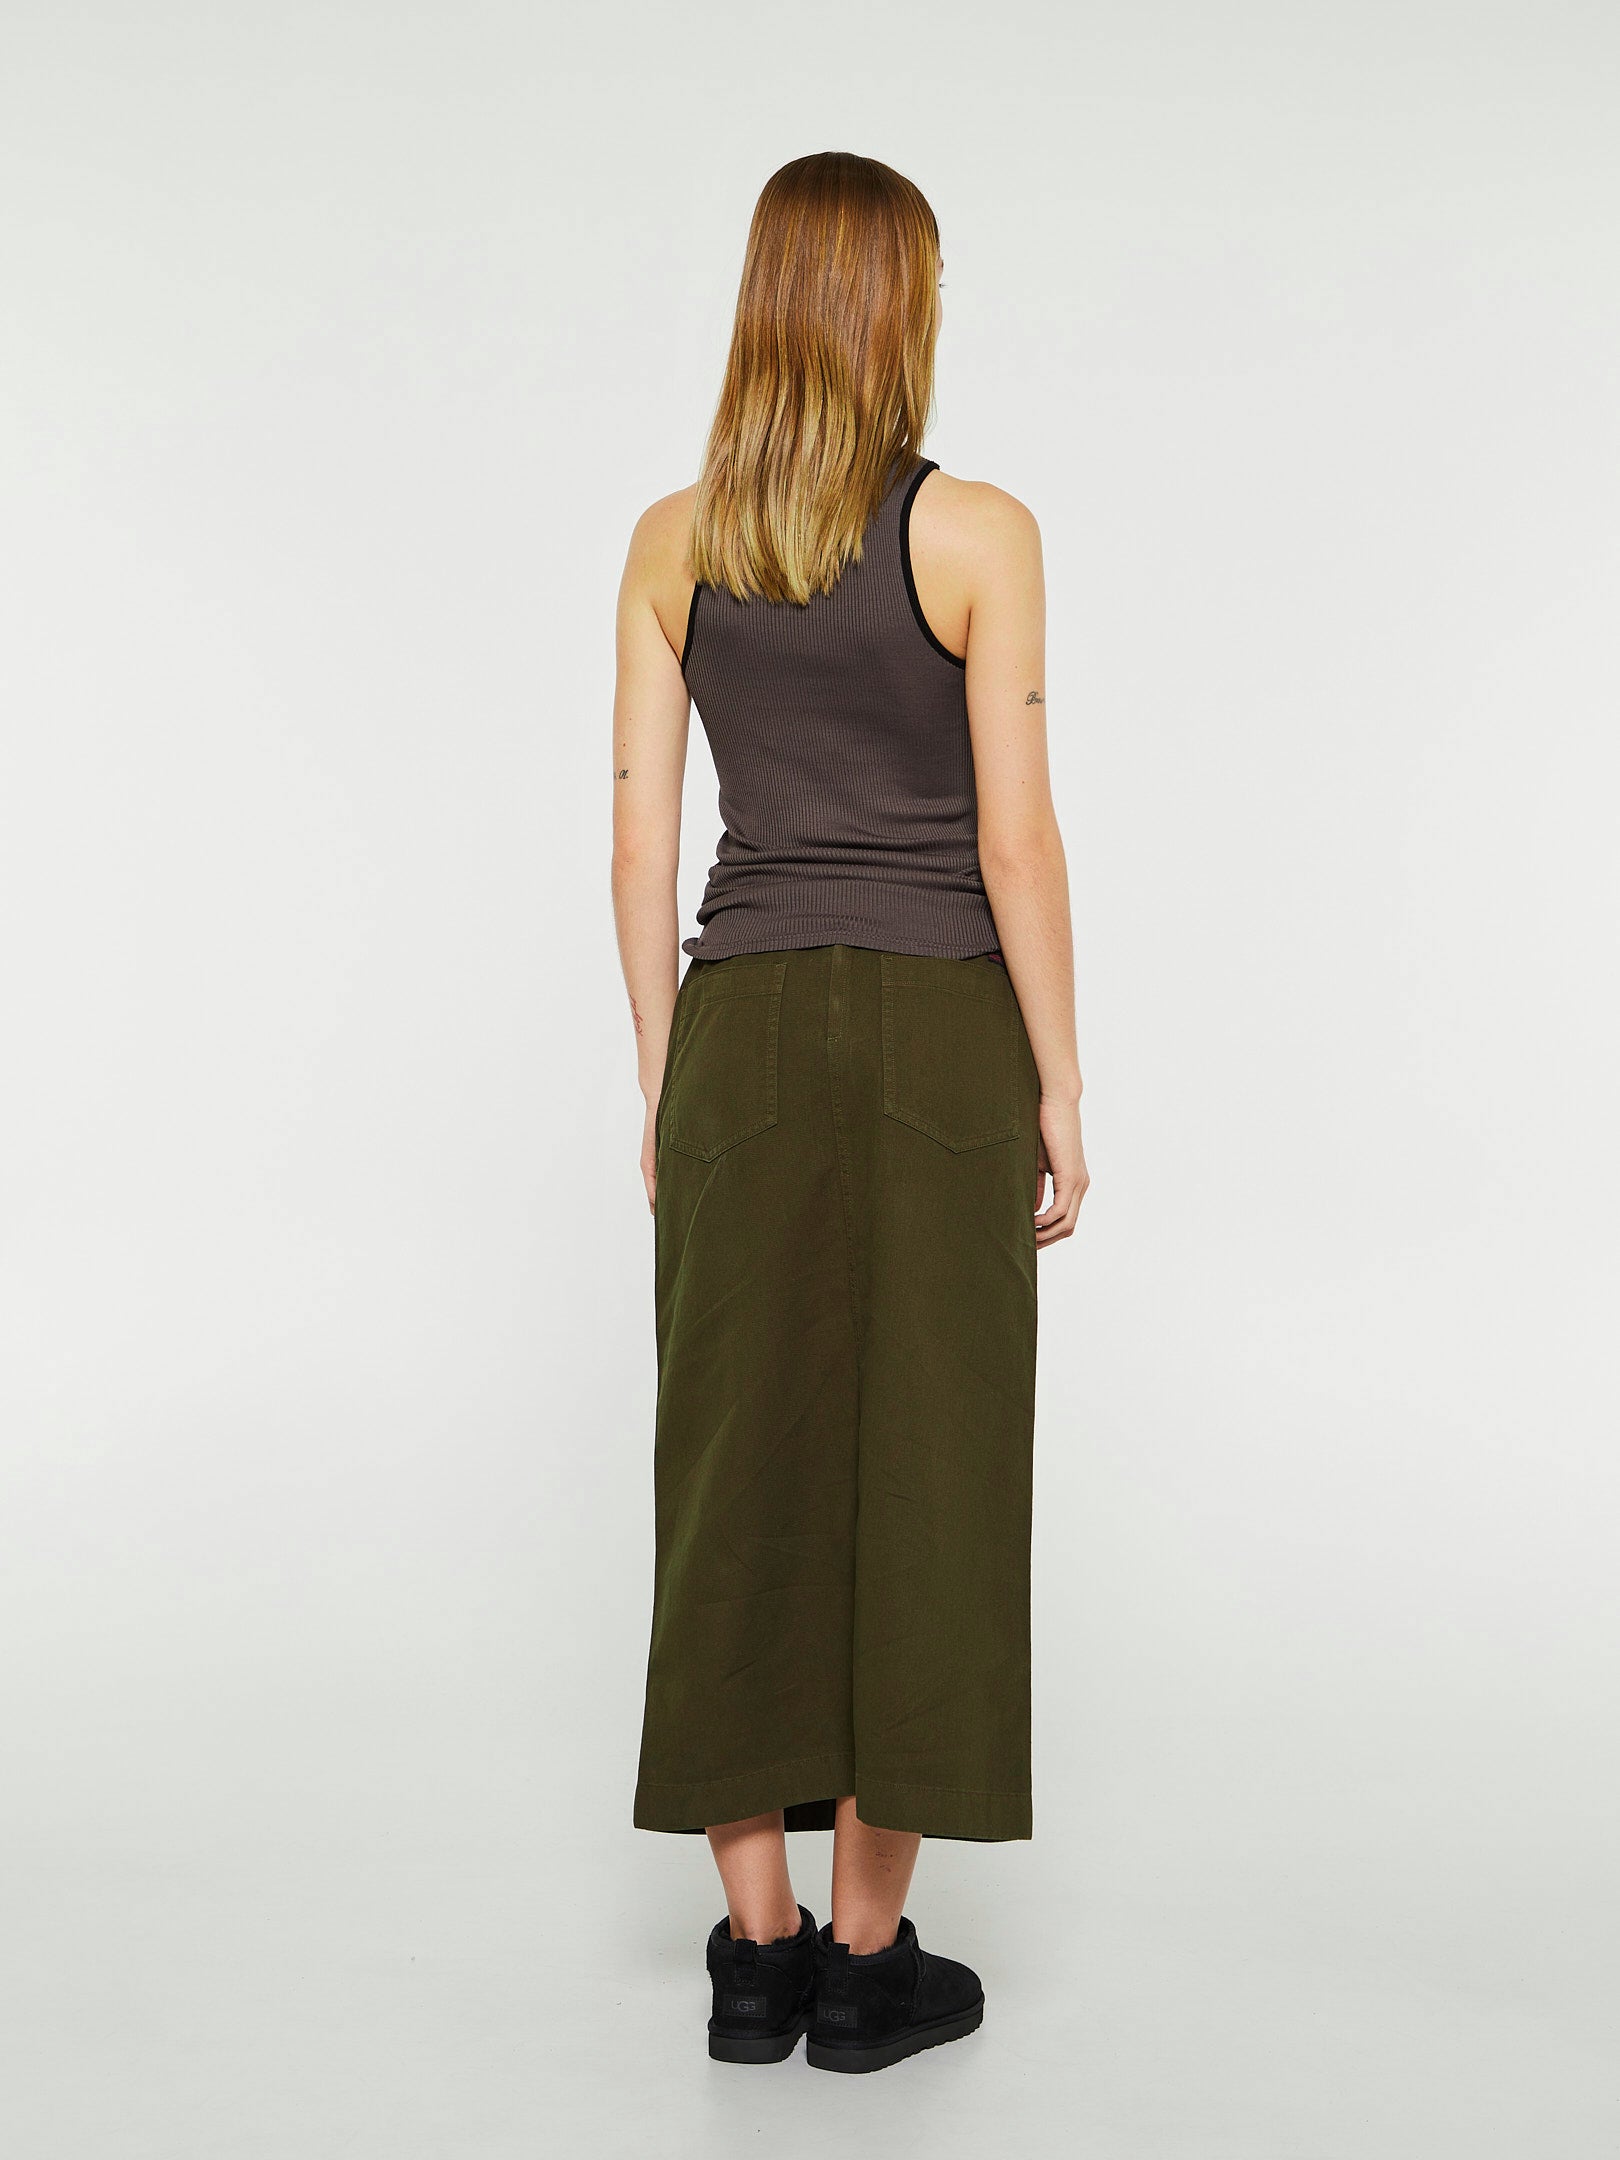 Long Baker Skirt in Deep Green